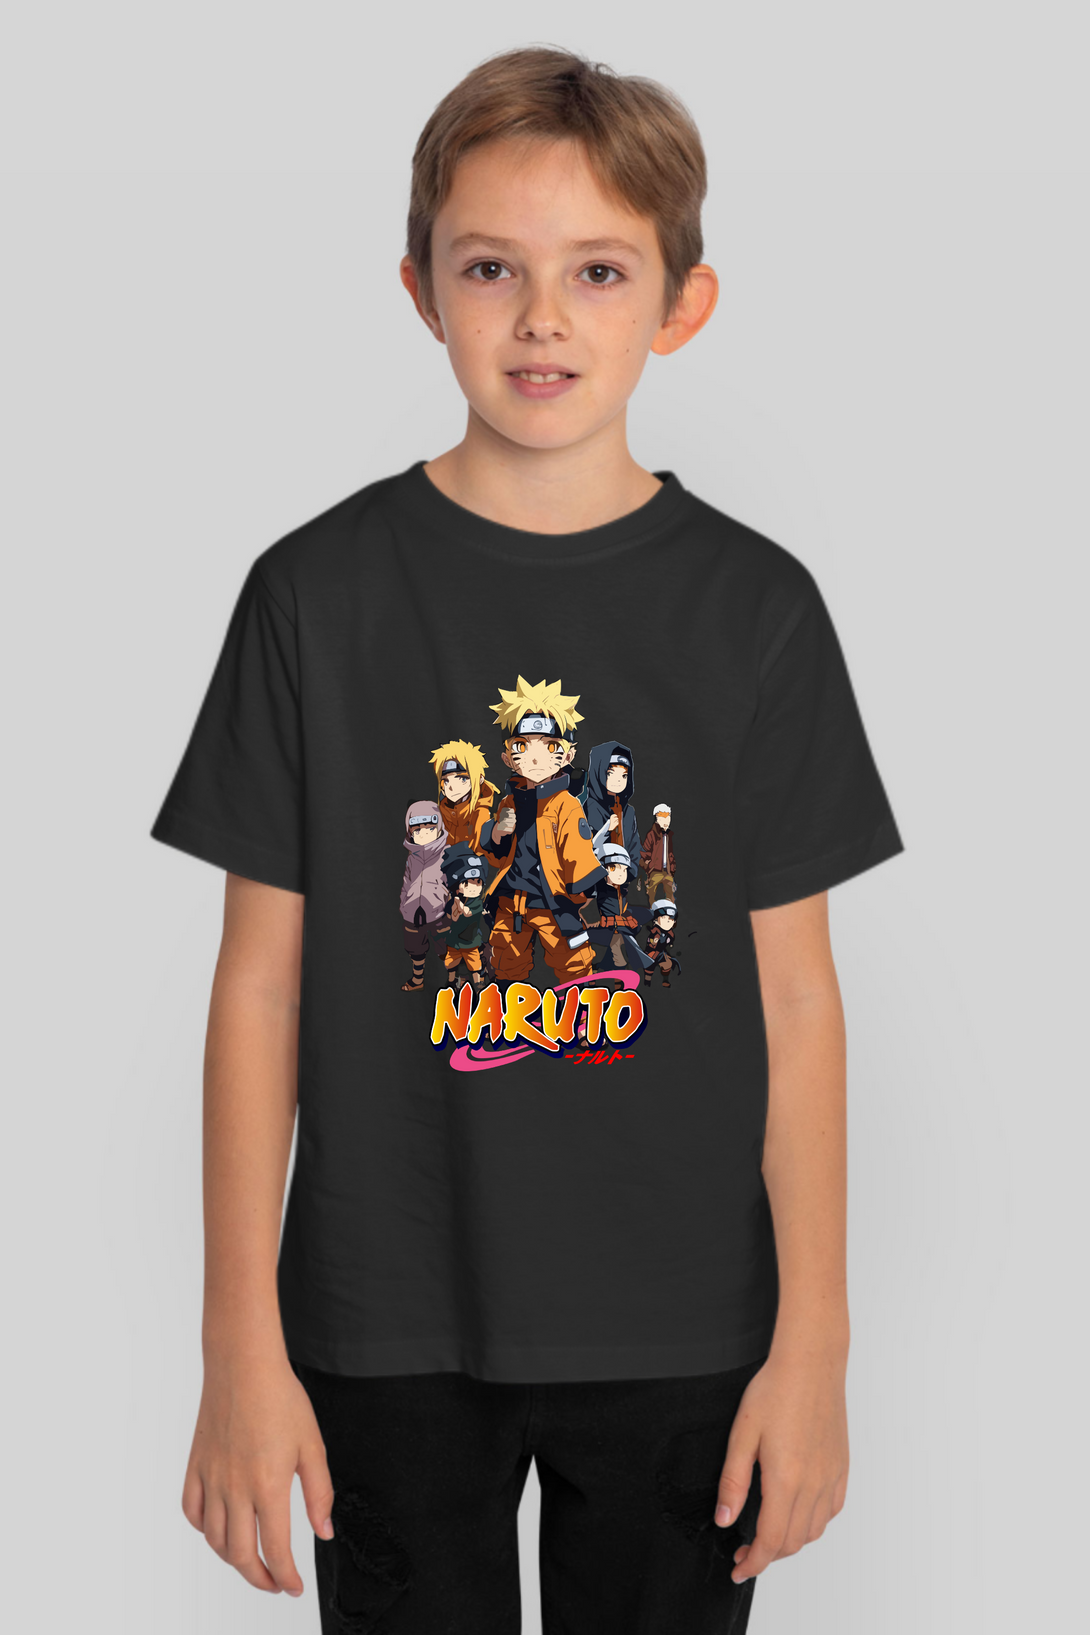 Anime Tiny Naruto Printed T-Shirt For Boy - WowWaves - 8